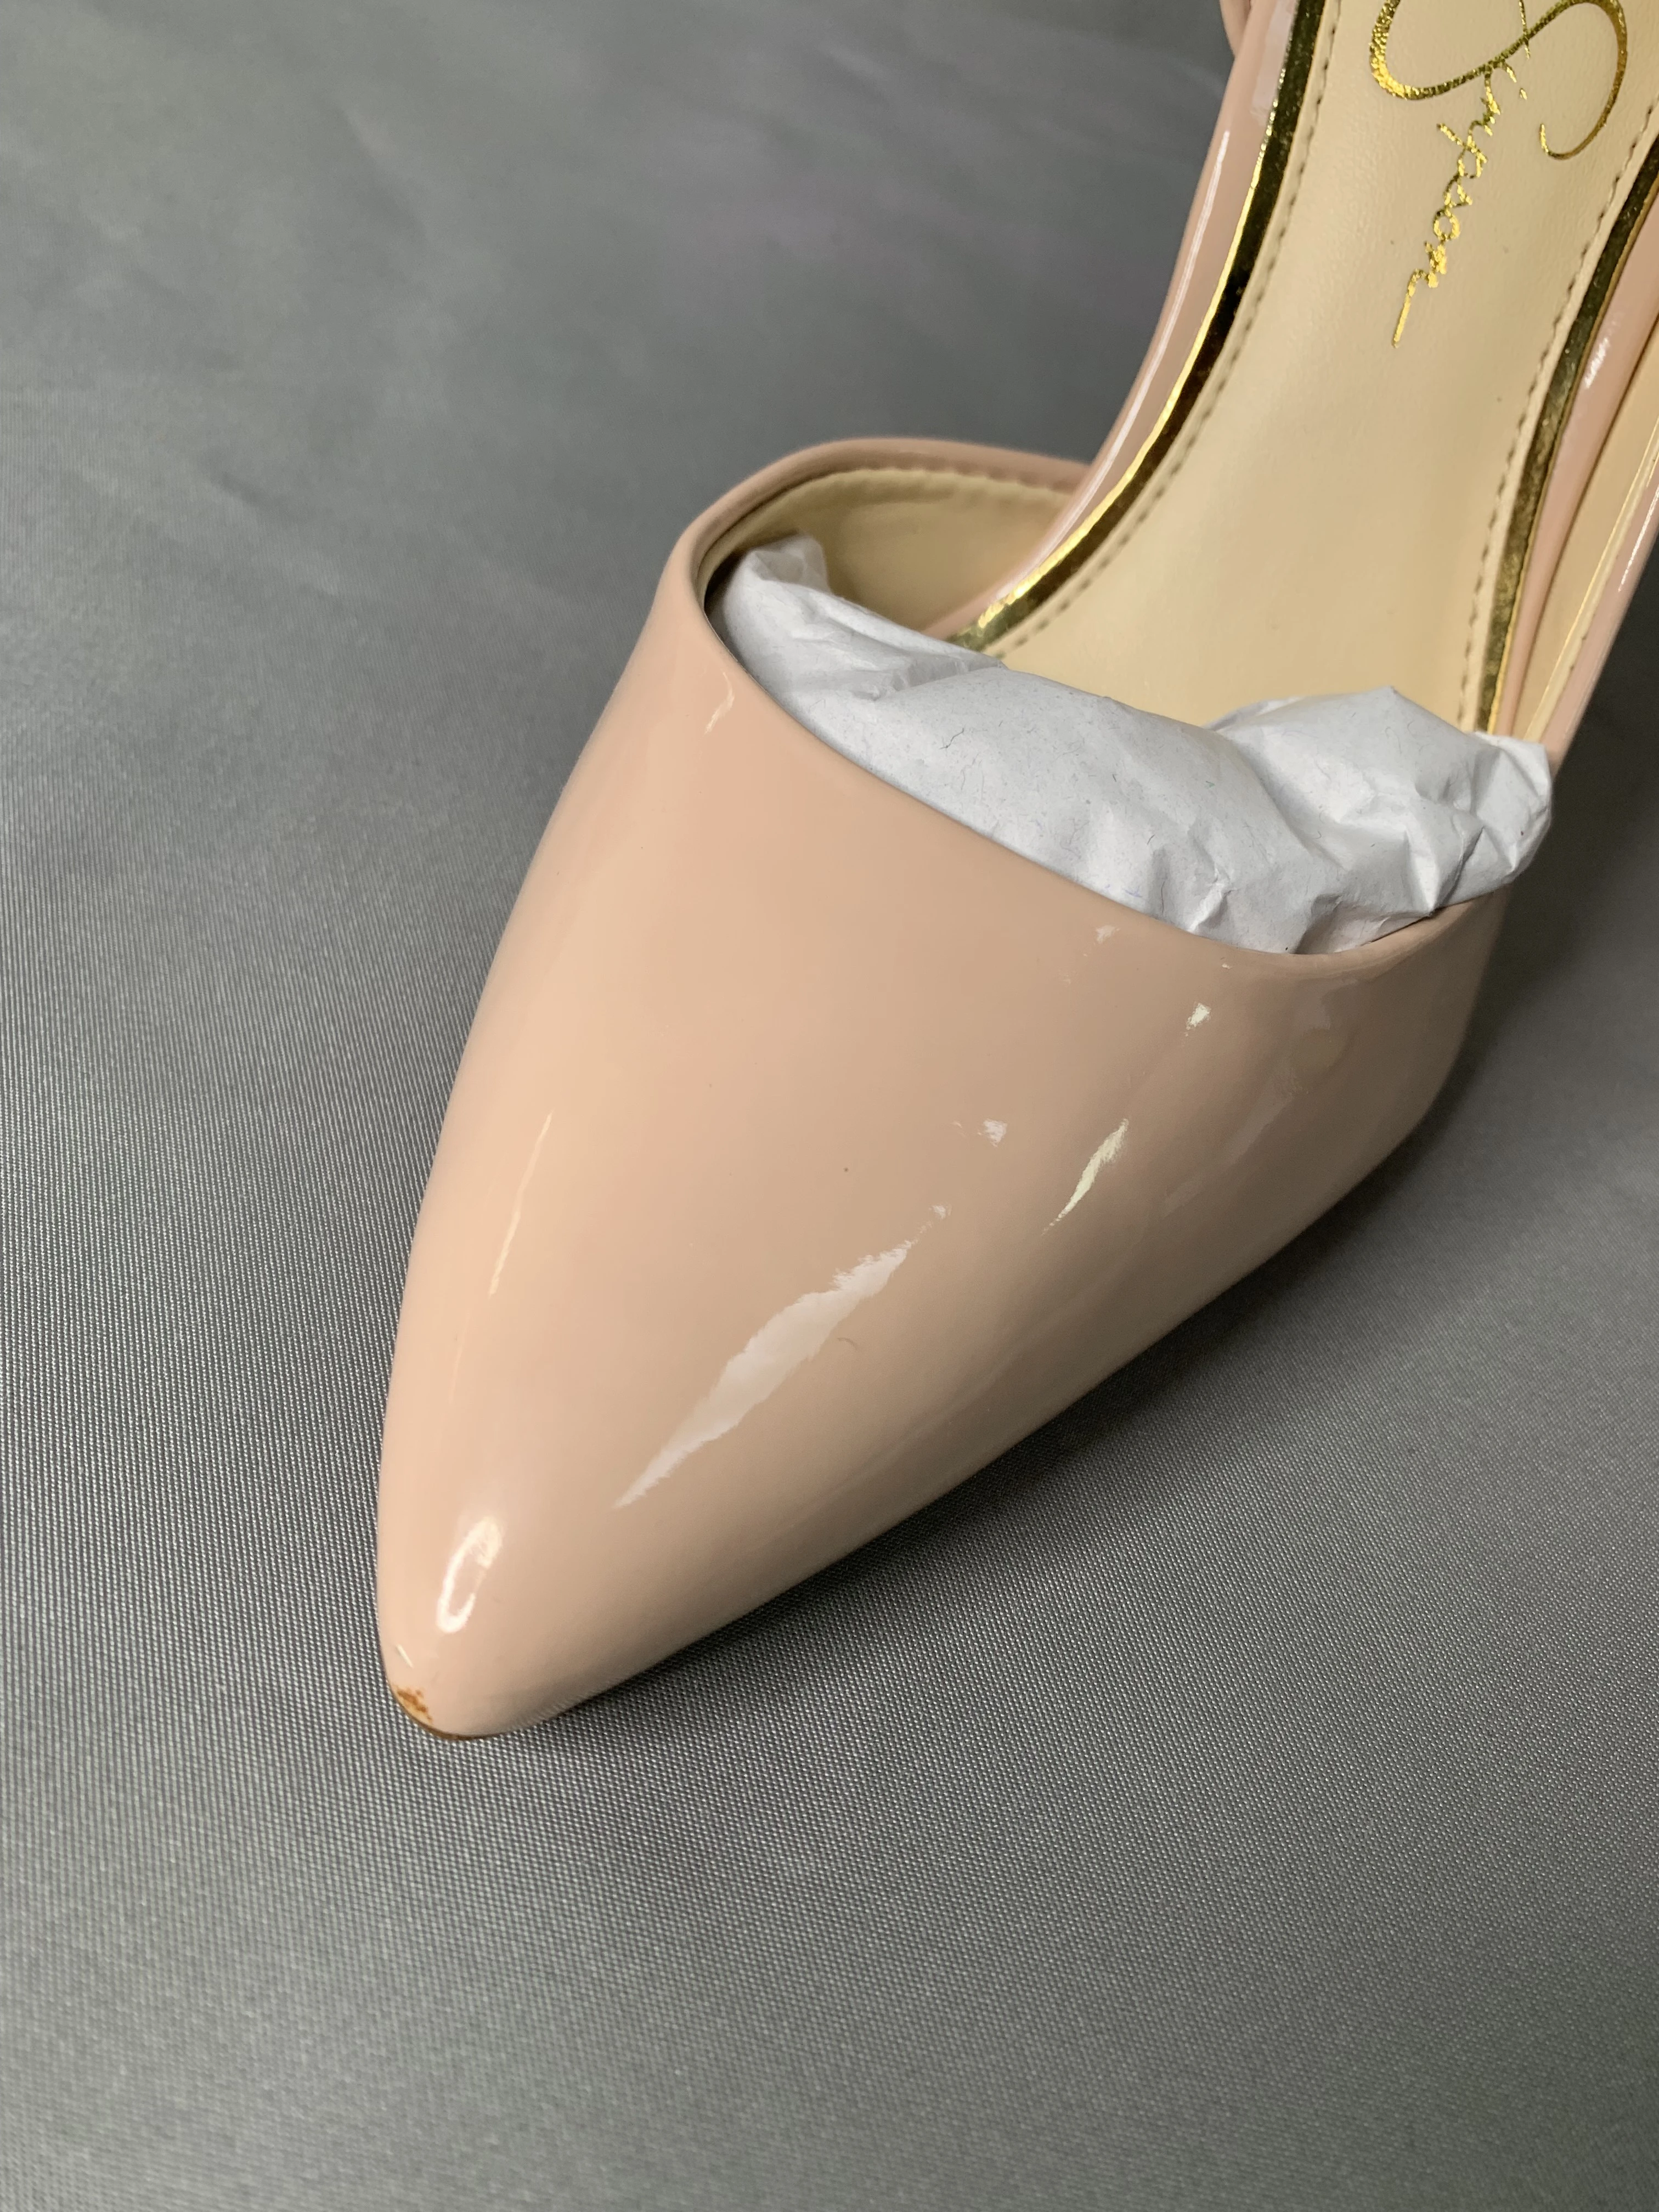 【瑕疵】1Jessica Simpson Women's Pheona D'Orsay Slip On High Heel Dress Pump 商品